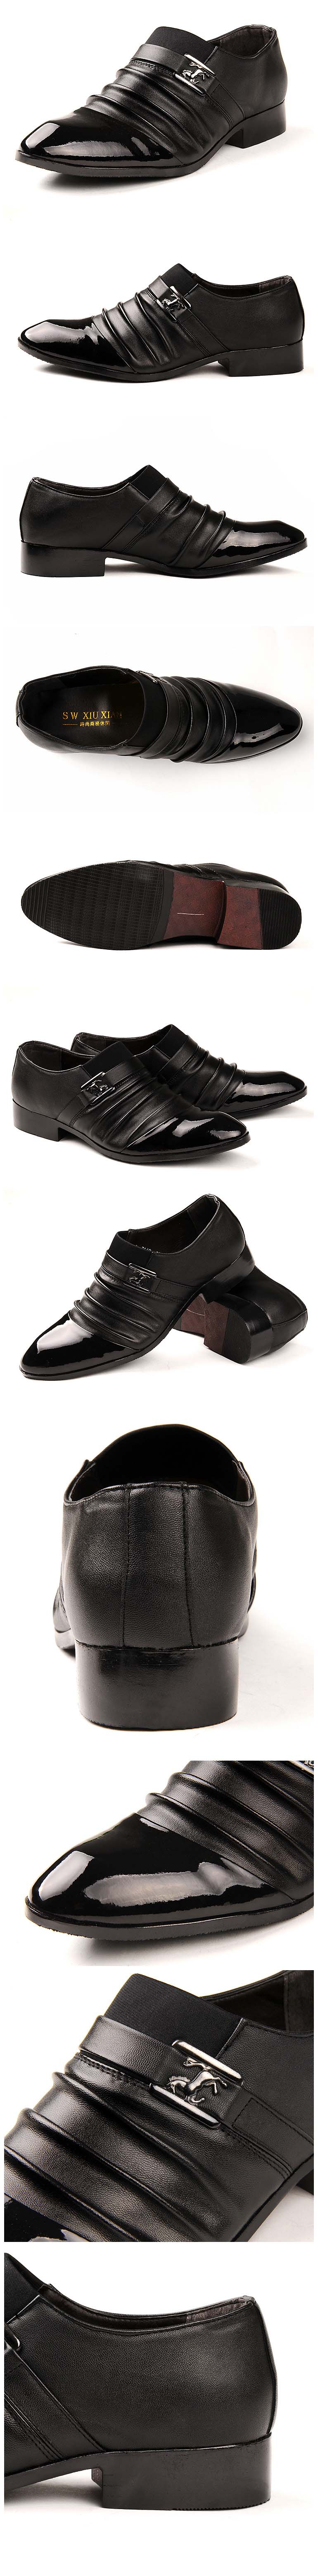 model sepatu kantor pria dengan logo ferrari desain sepatu ini juga sangat elegan sangat cocok untuk dipakai ke kantor 